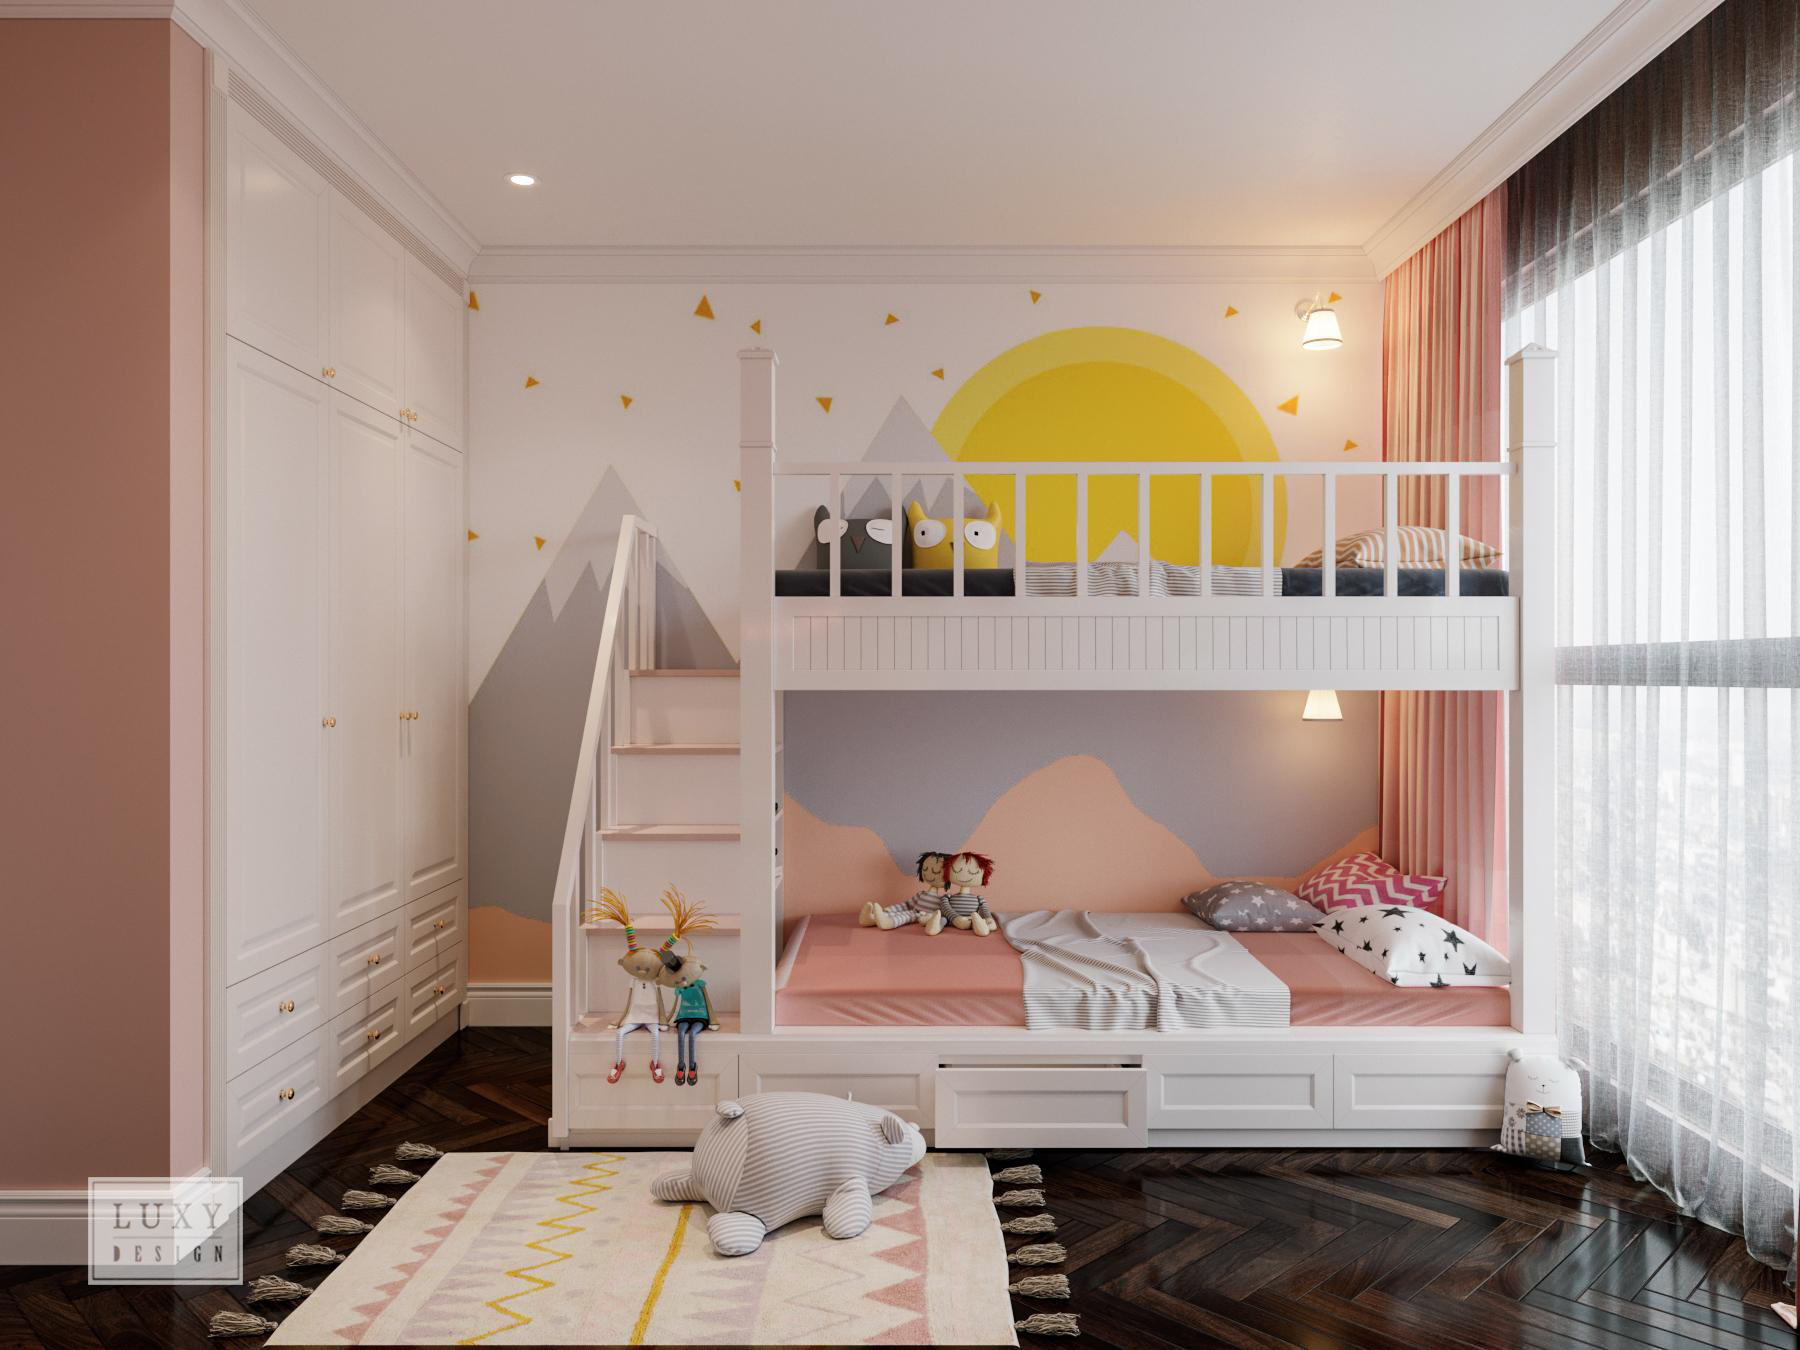 Thiết kế nội thất căn hộ Vinhomes Skylake Hà Nội - Phòng ngủ của bé